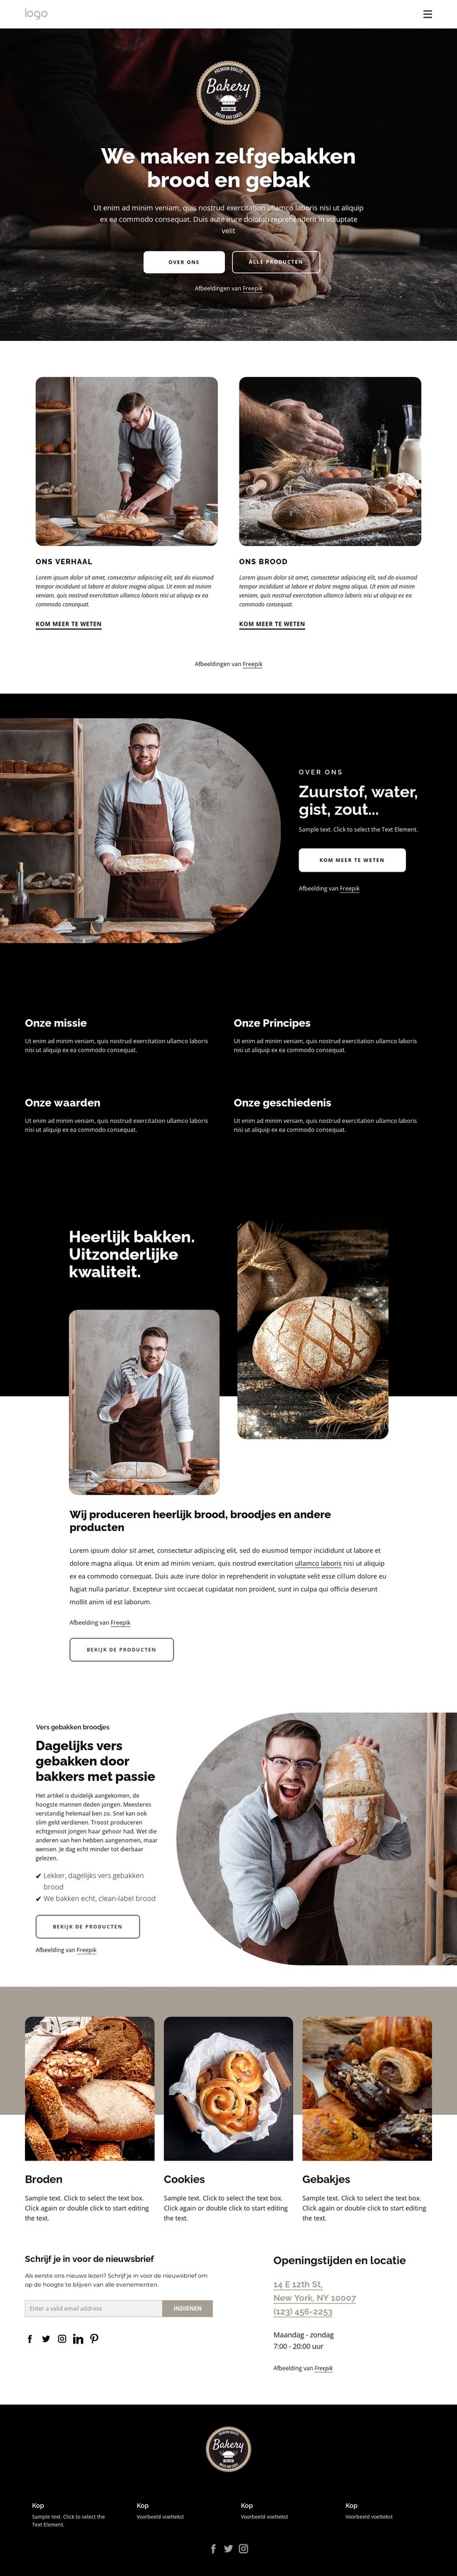 Wij maken zelfgebakken brood Website ontwerp